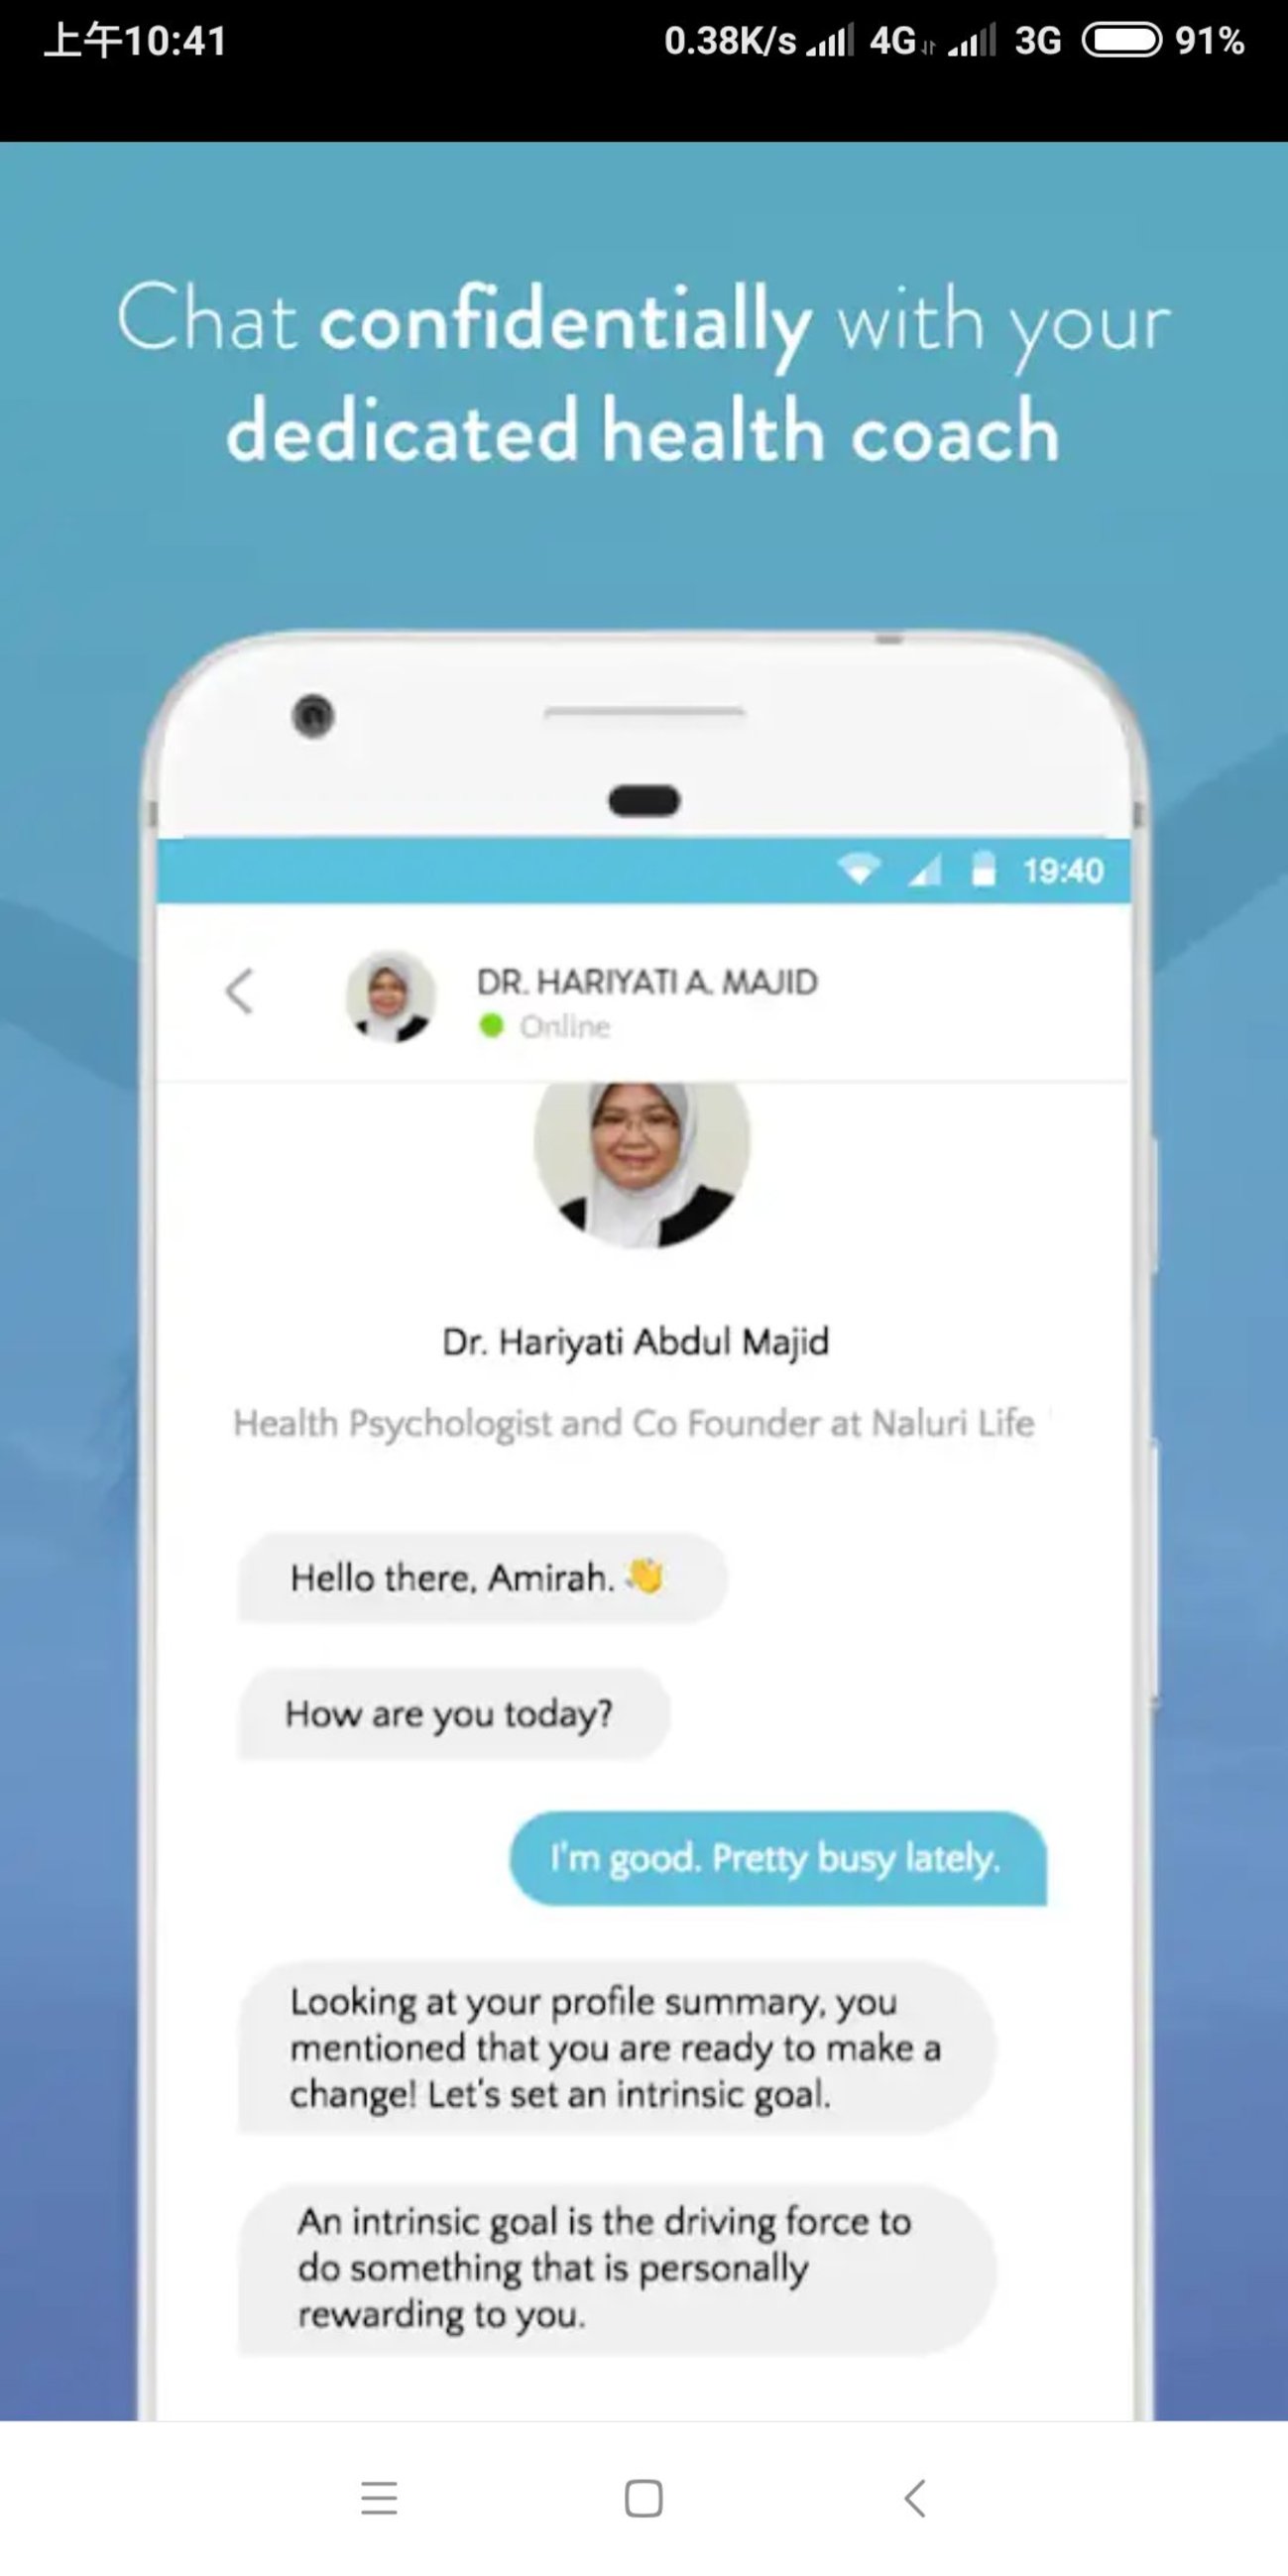 用户与心理医生之间的咨询以App内对话方式进行，无需面对面。当然，考量到国内心理医生短缺但求诊者众多，用户不能期许对方马上回答。通常会在24小时内作答。